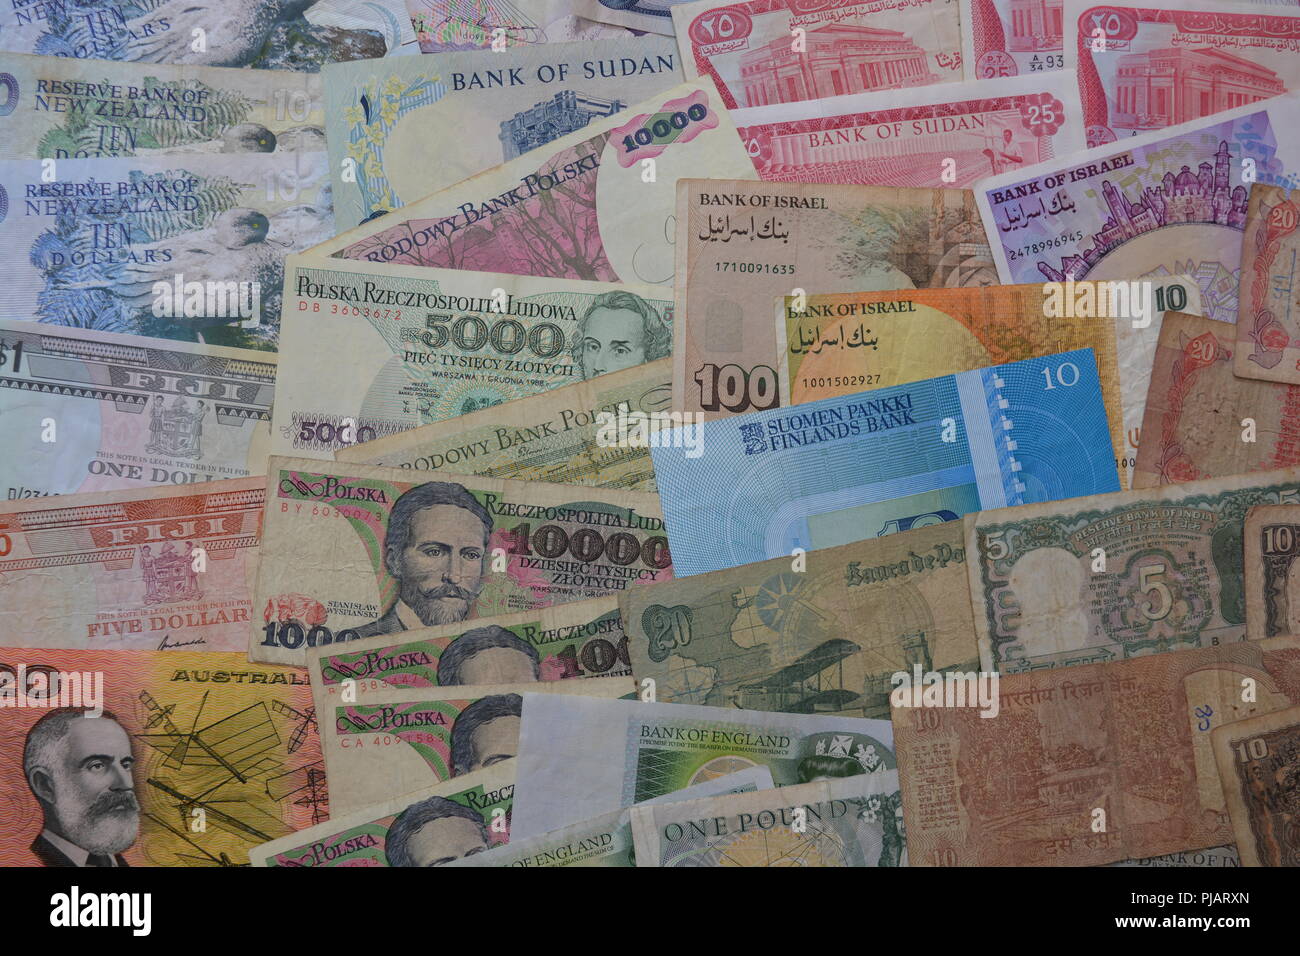 Sammlung von Währungen der Welt, alte Banknoten aus verschiedenen Ländern, darunter Polen, Finnland, England, Indien, Australien, Sudan, Fidschi, etc. Stockfoto